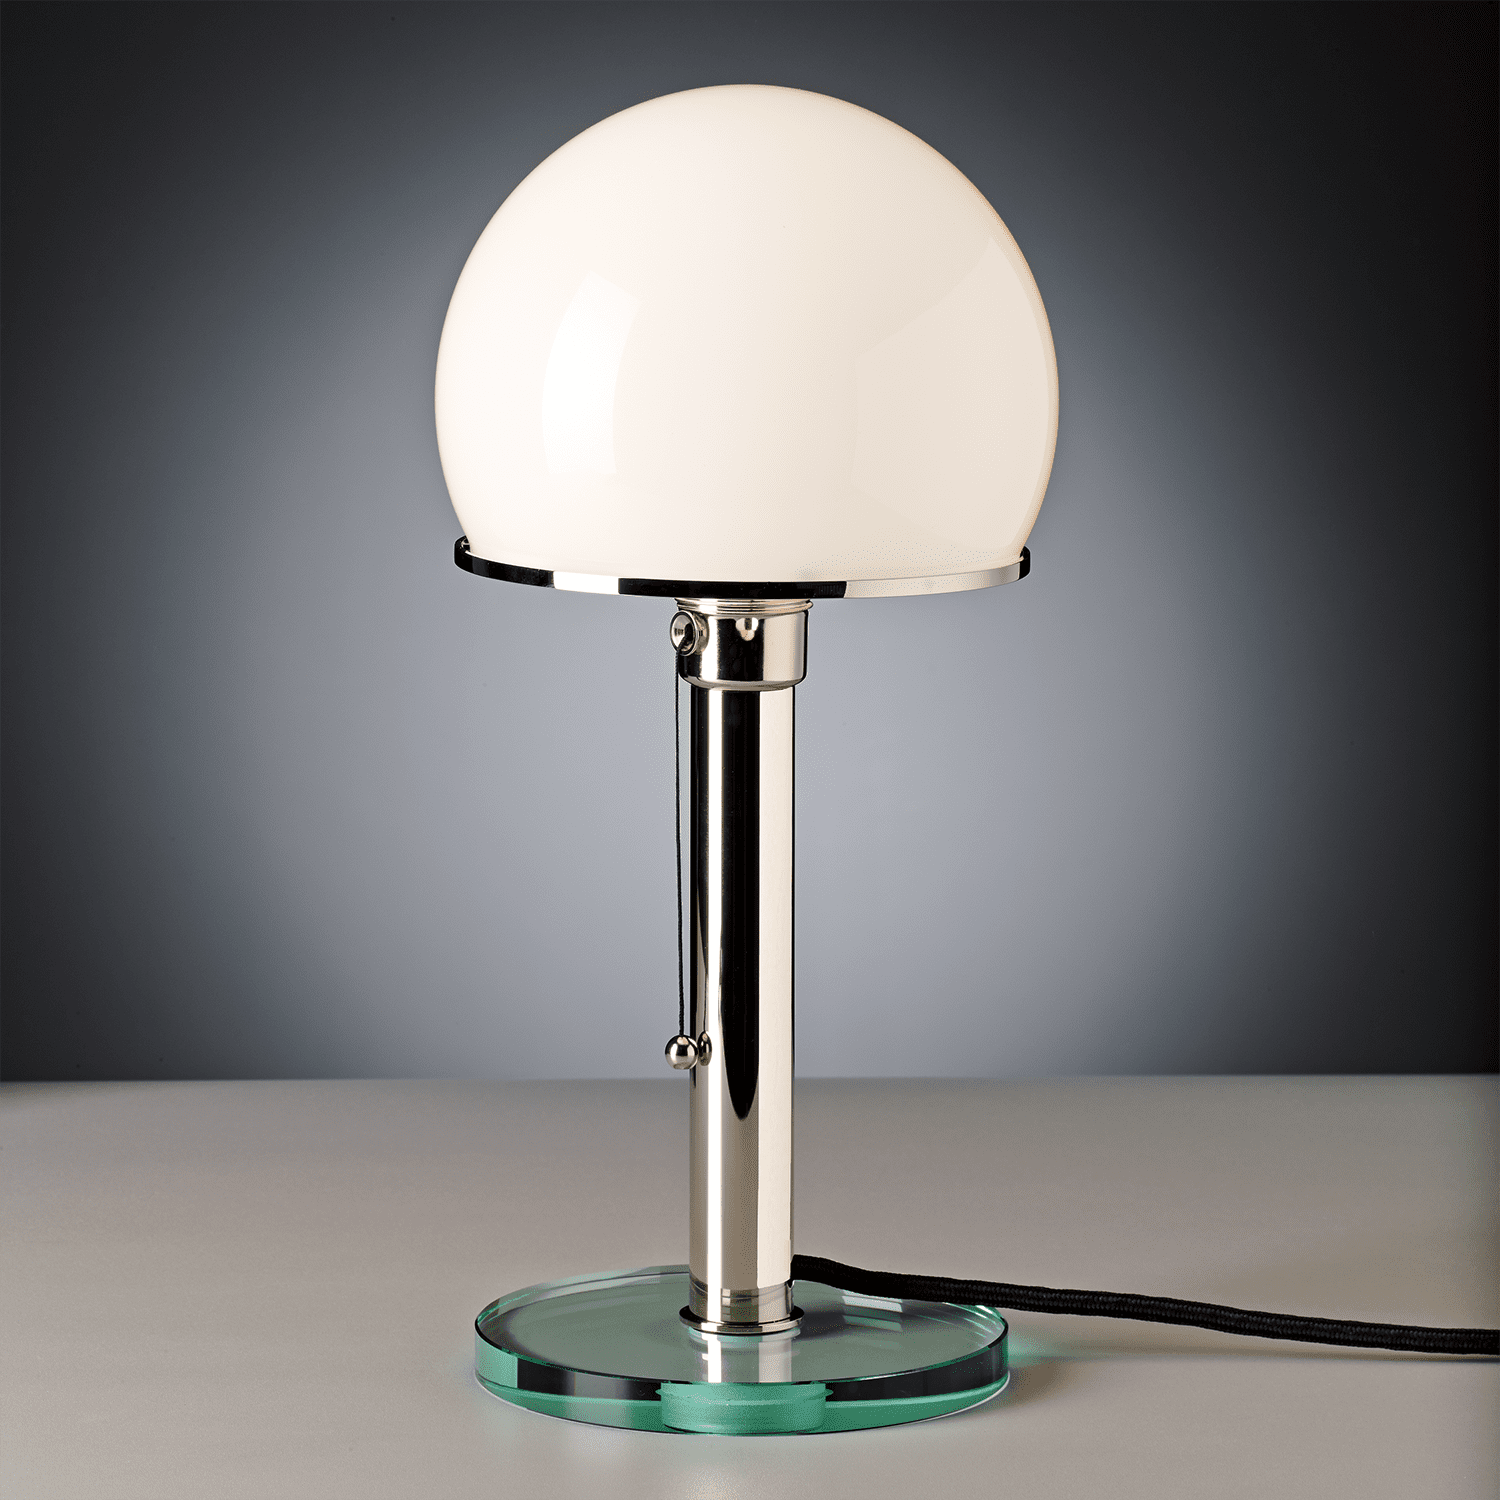 תמונה של מנורת באוהאוס ווגנפלד WG 25 GL של חברת Tecnolumen